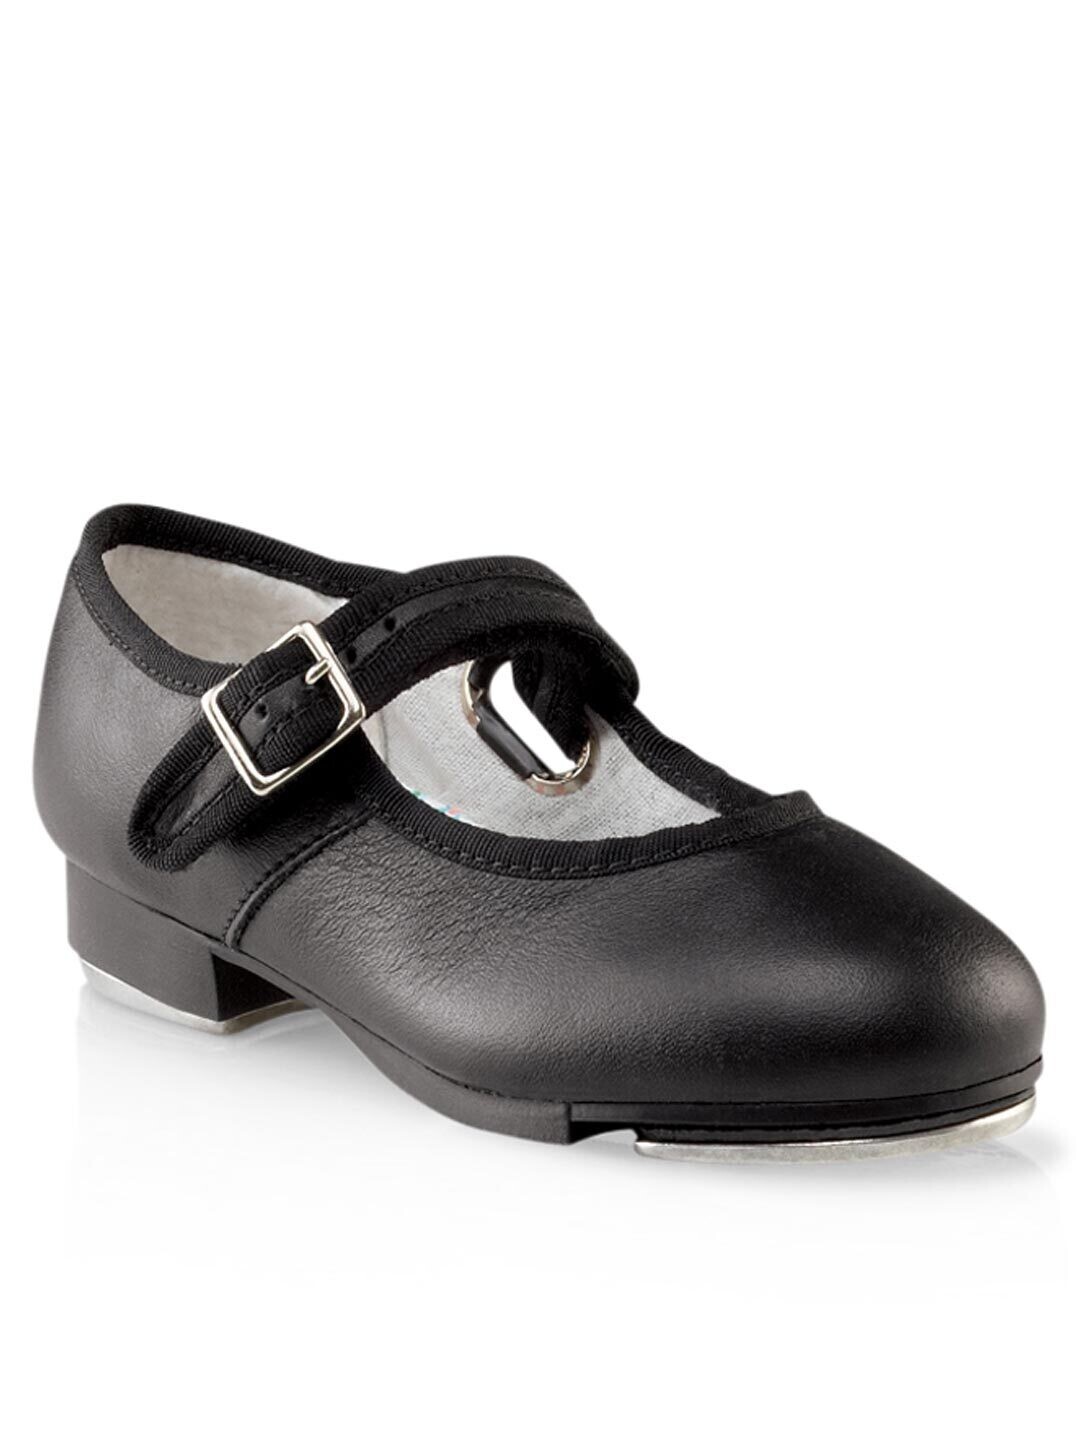 Capezio Mary Jane Tap Shoe - Child, Color: Black, Size: 6, Width: M